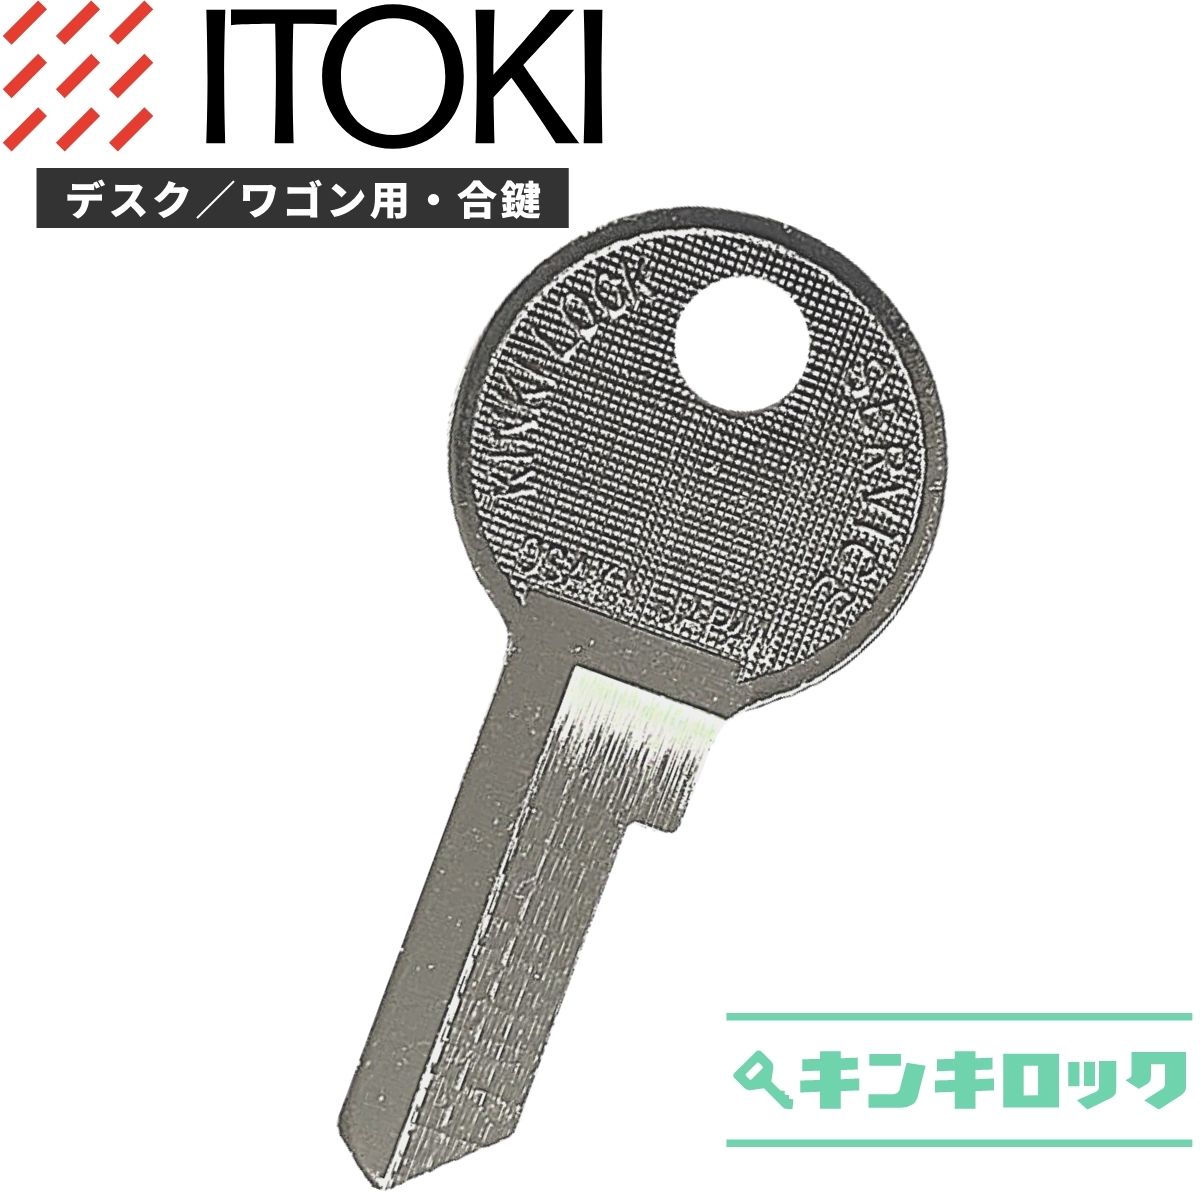 【楽天市場】イトーキ ITOKI 鍵 机 デスク ワゴン 合鍵 合カギ カギ 